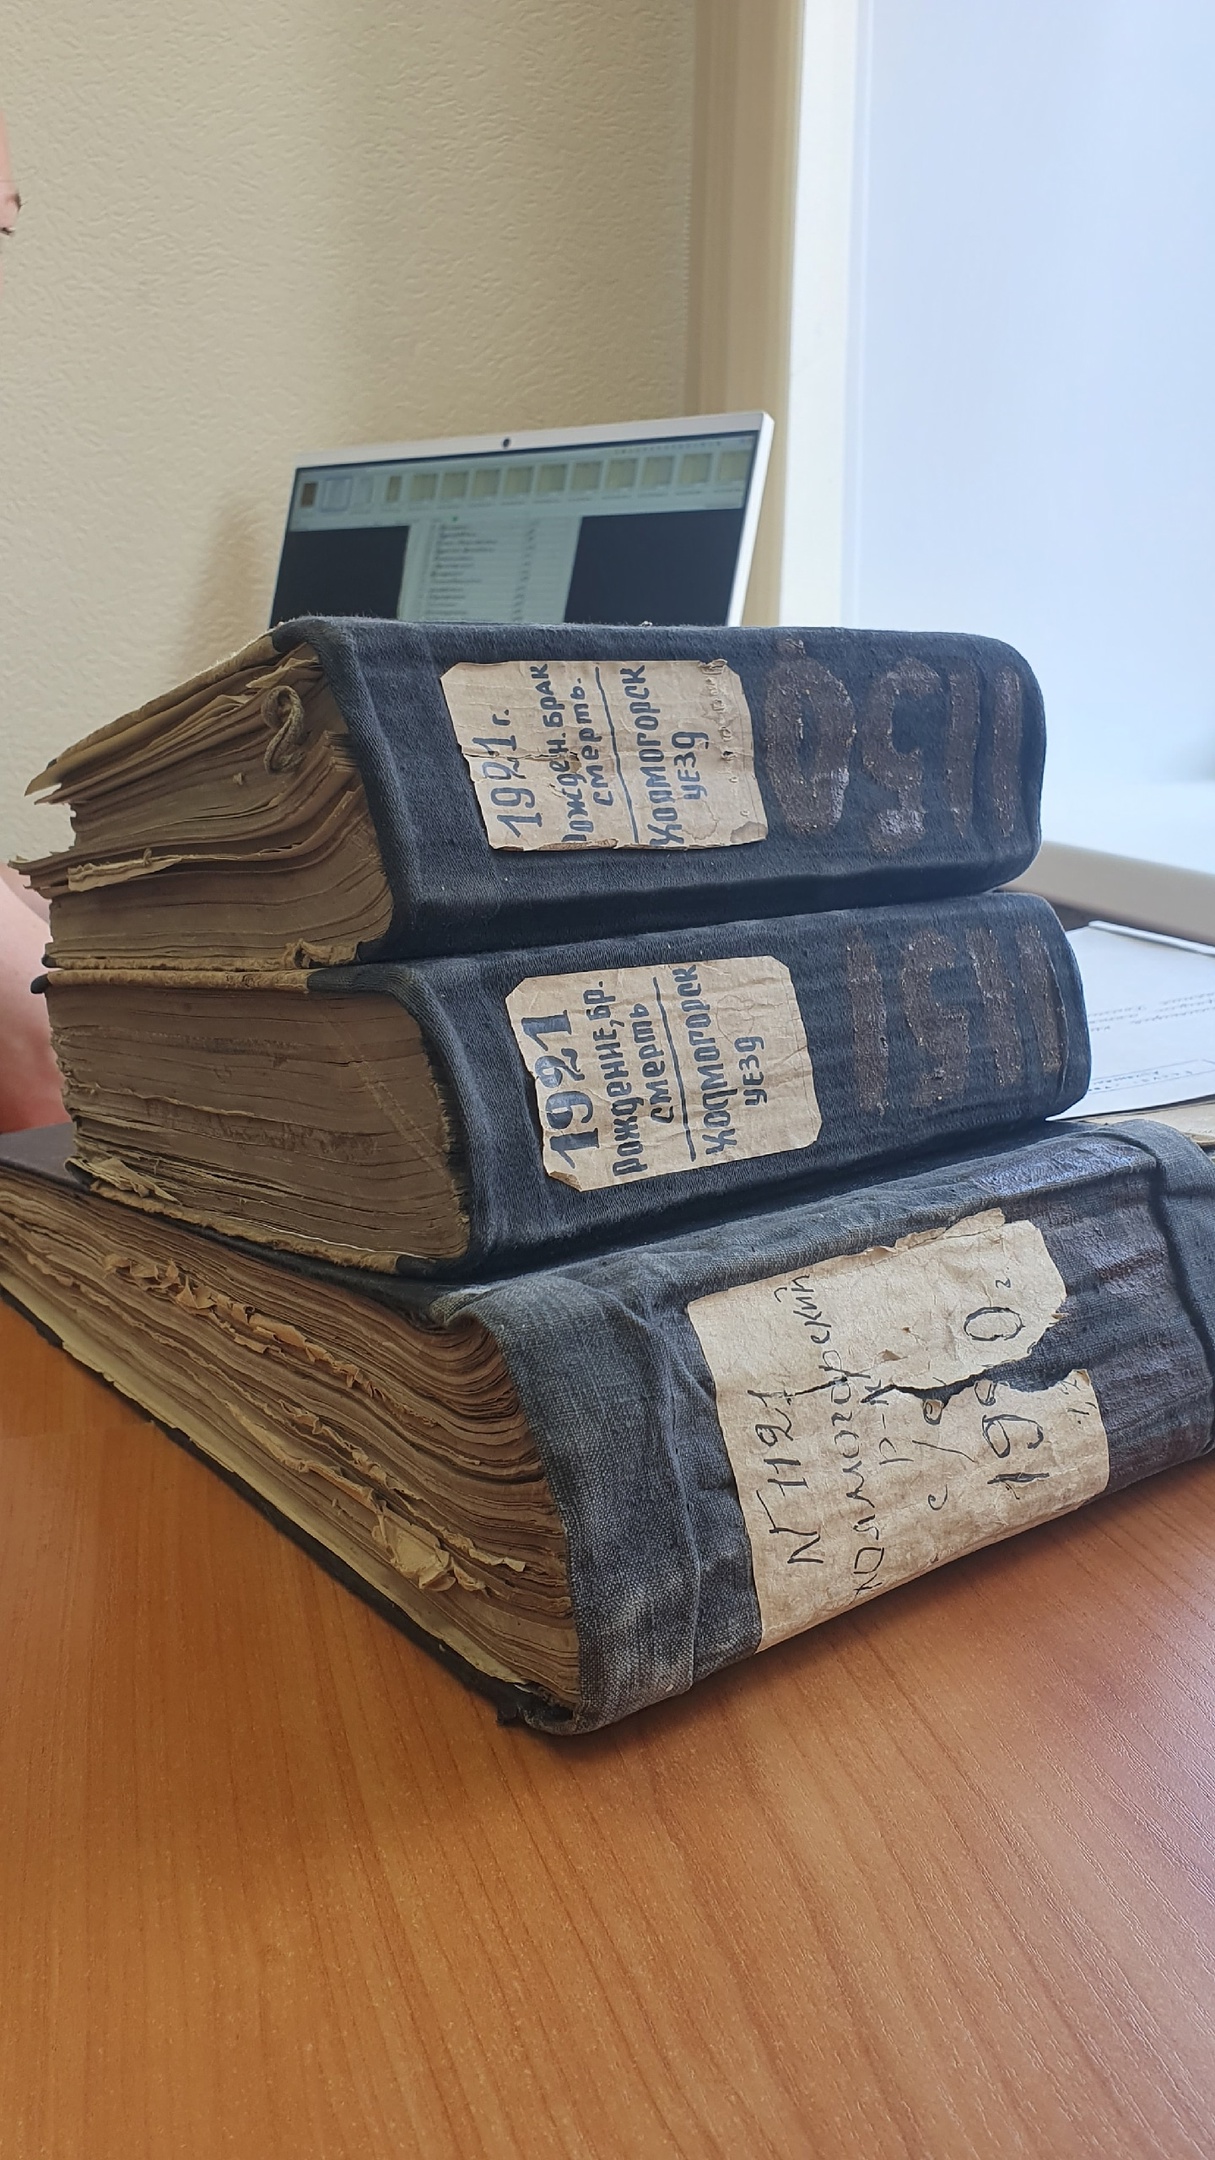 Так выглядят старинные книги государственной регистрации актов гражданского состояния/Фото: Татьяна ЕВГРАФОВА